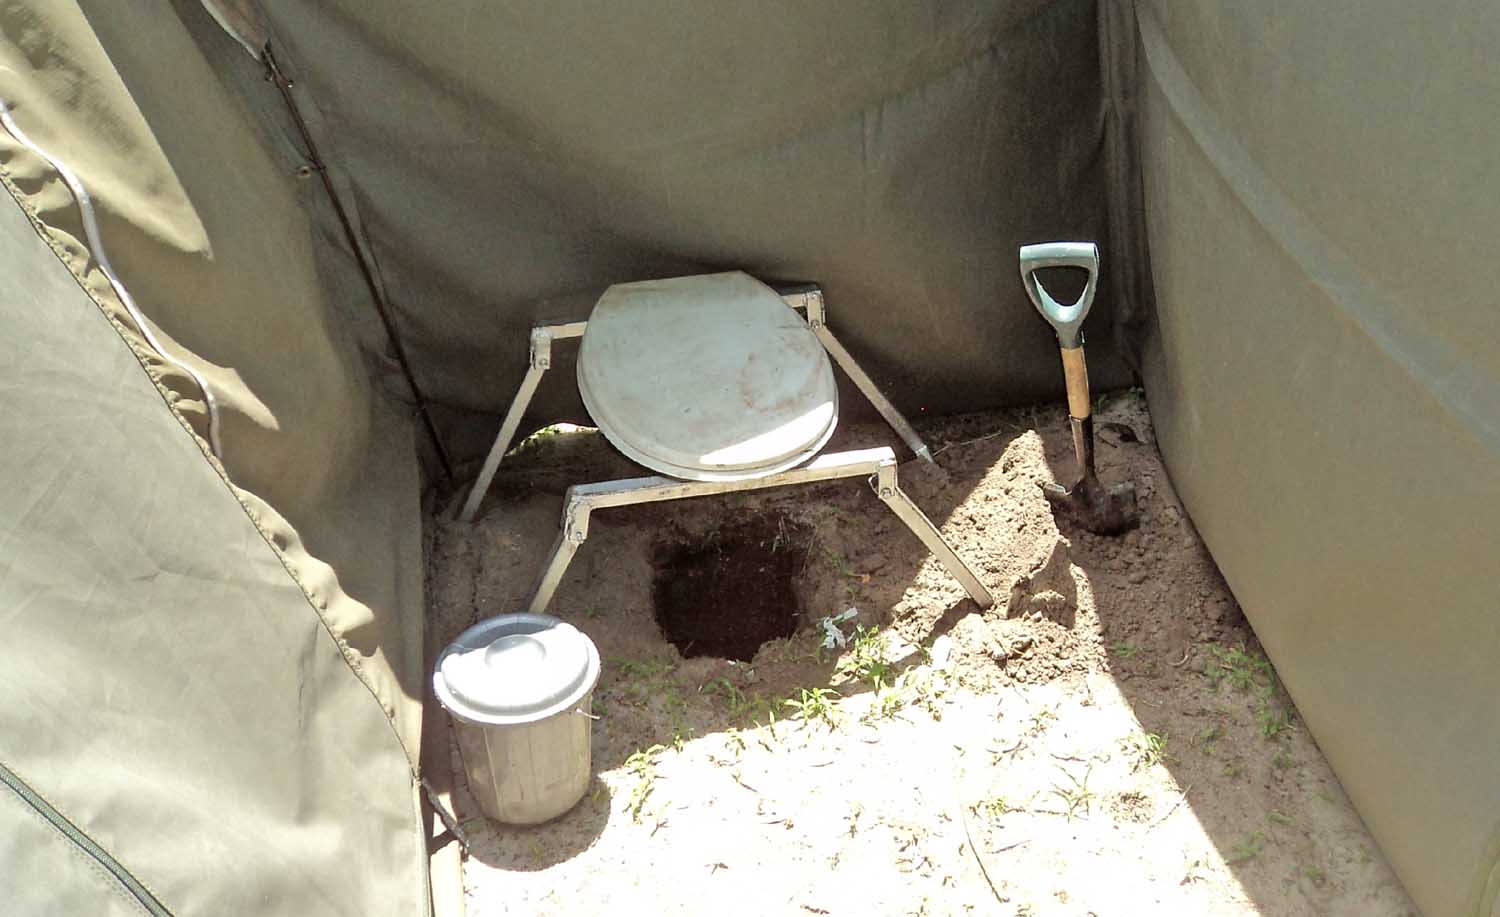 Ensuite toilet in Central Kalahari